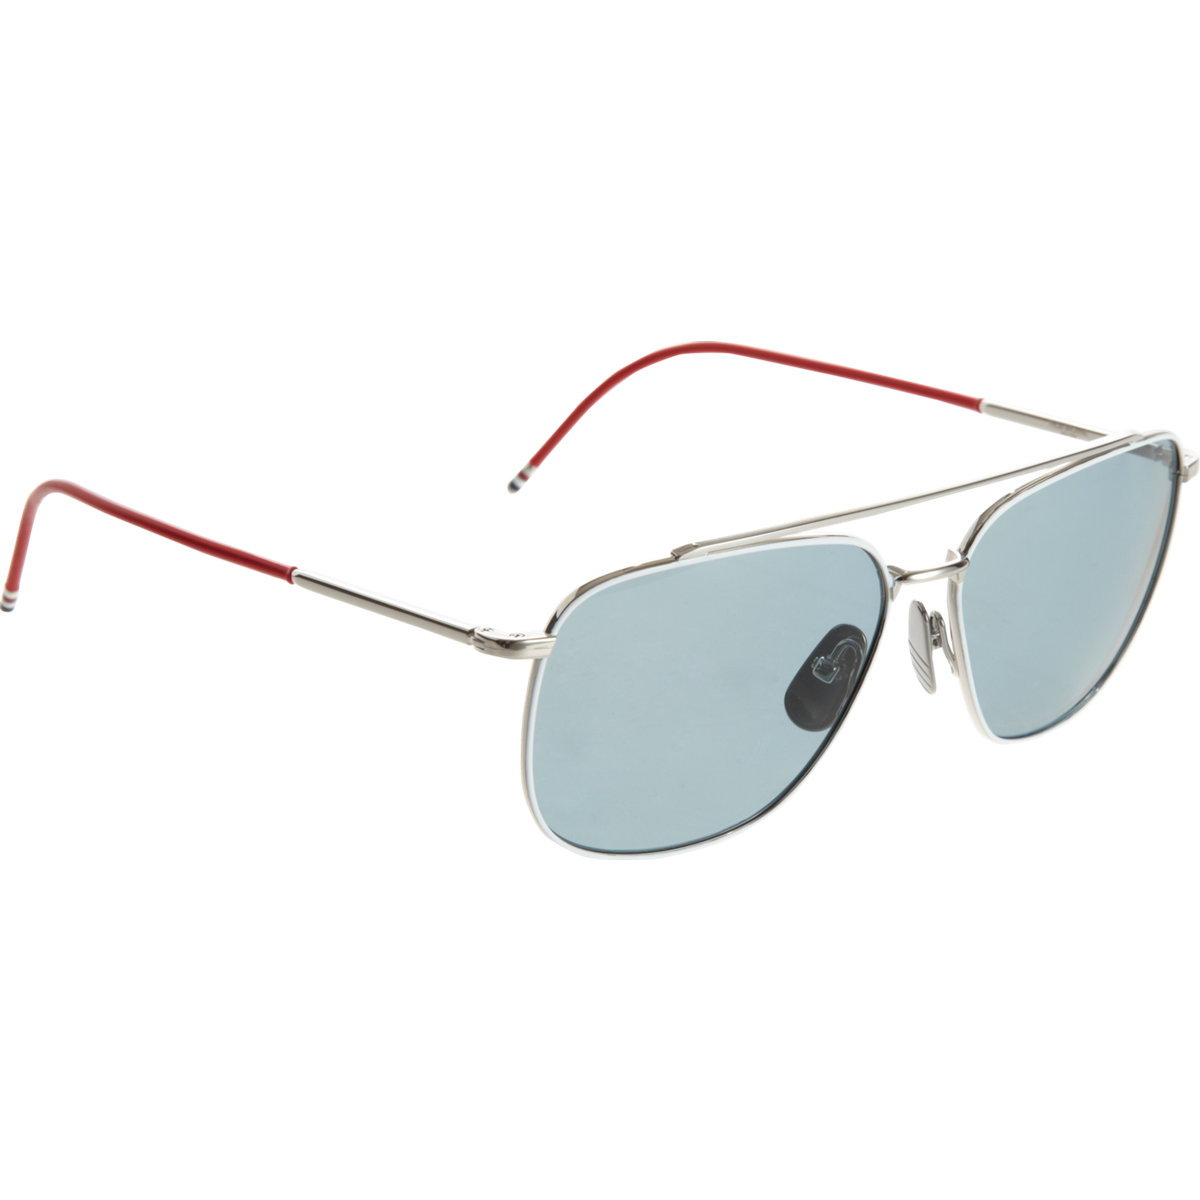 Oakley Aviator Sunglasses For Men